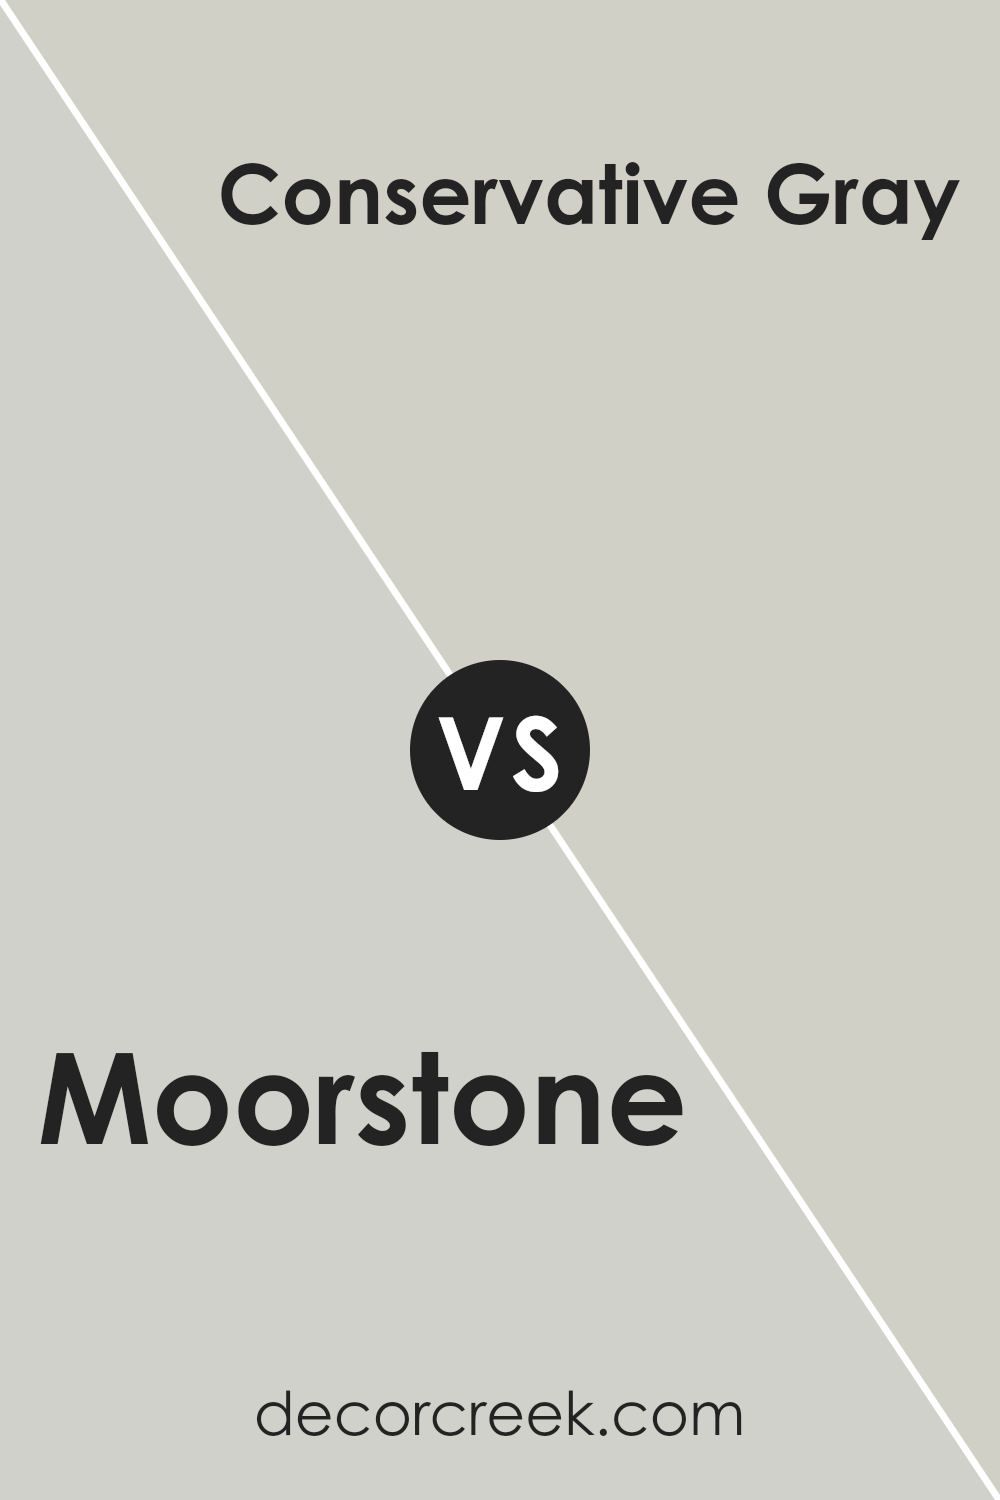 moorstone_sw_9630_vs_conservative_gray_sw_6183